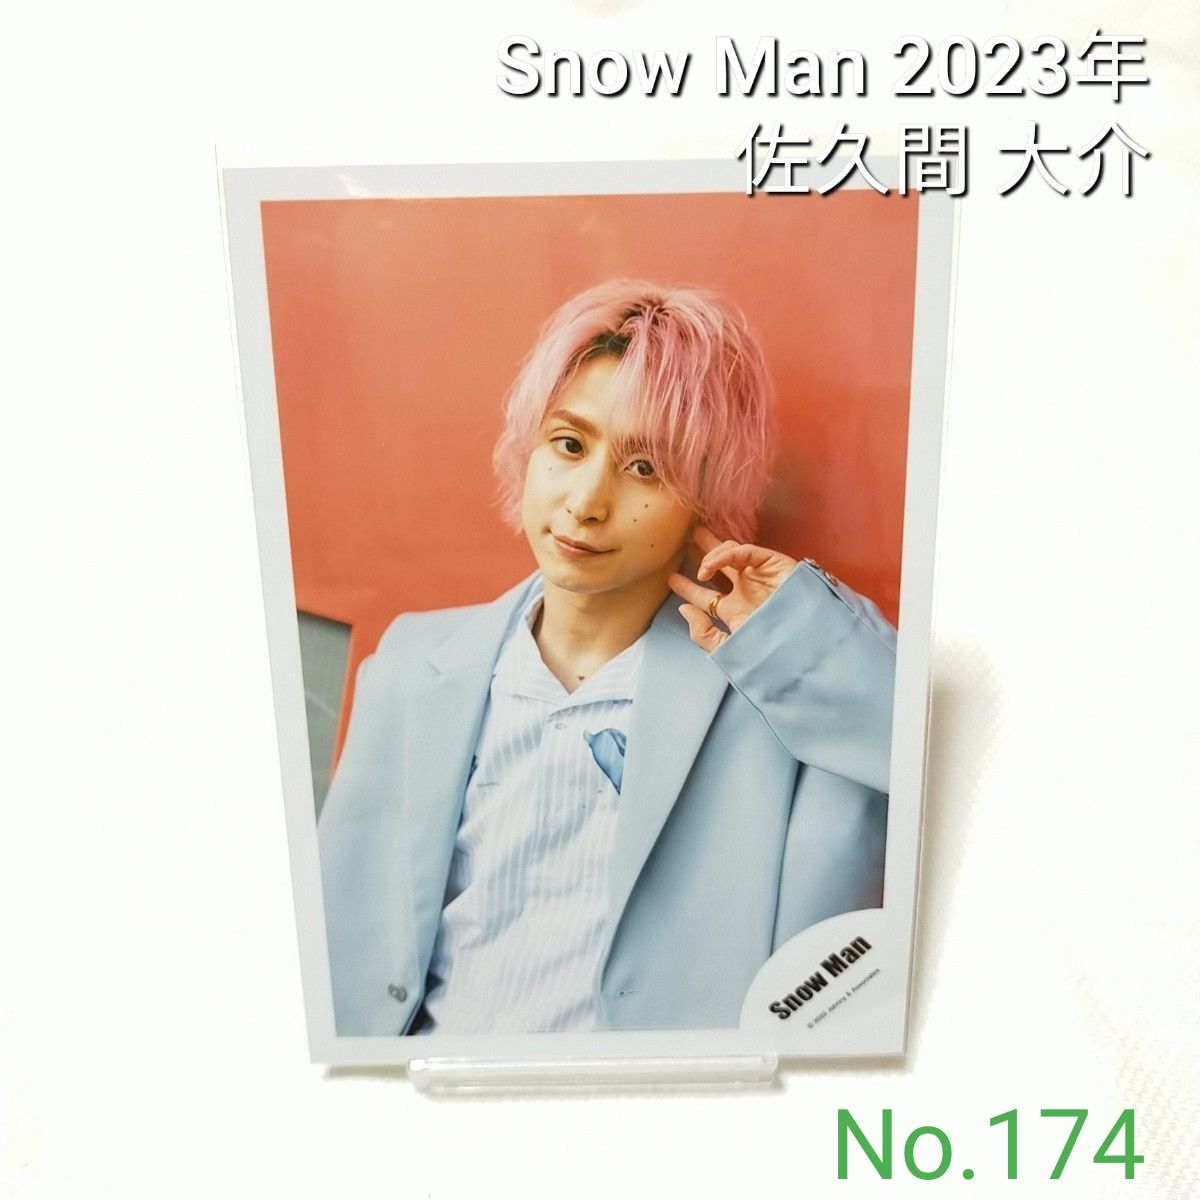 174 Snow Man 佐久間大介 公式写真 スノーマン 2023年